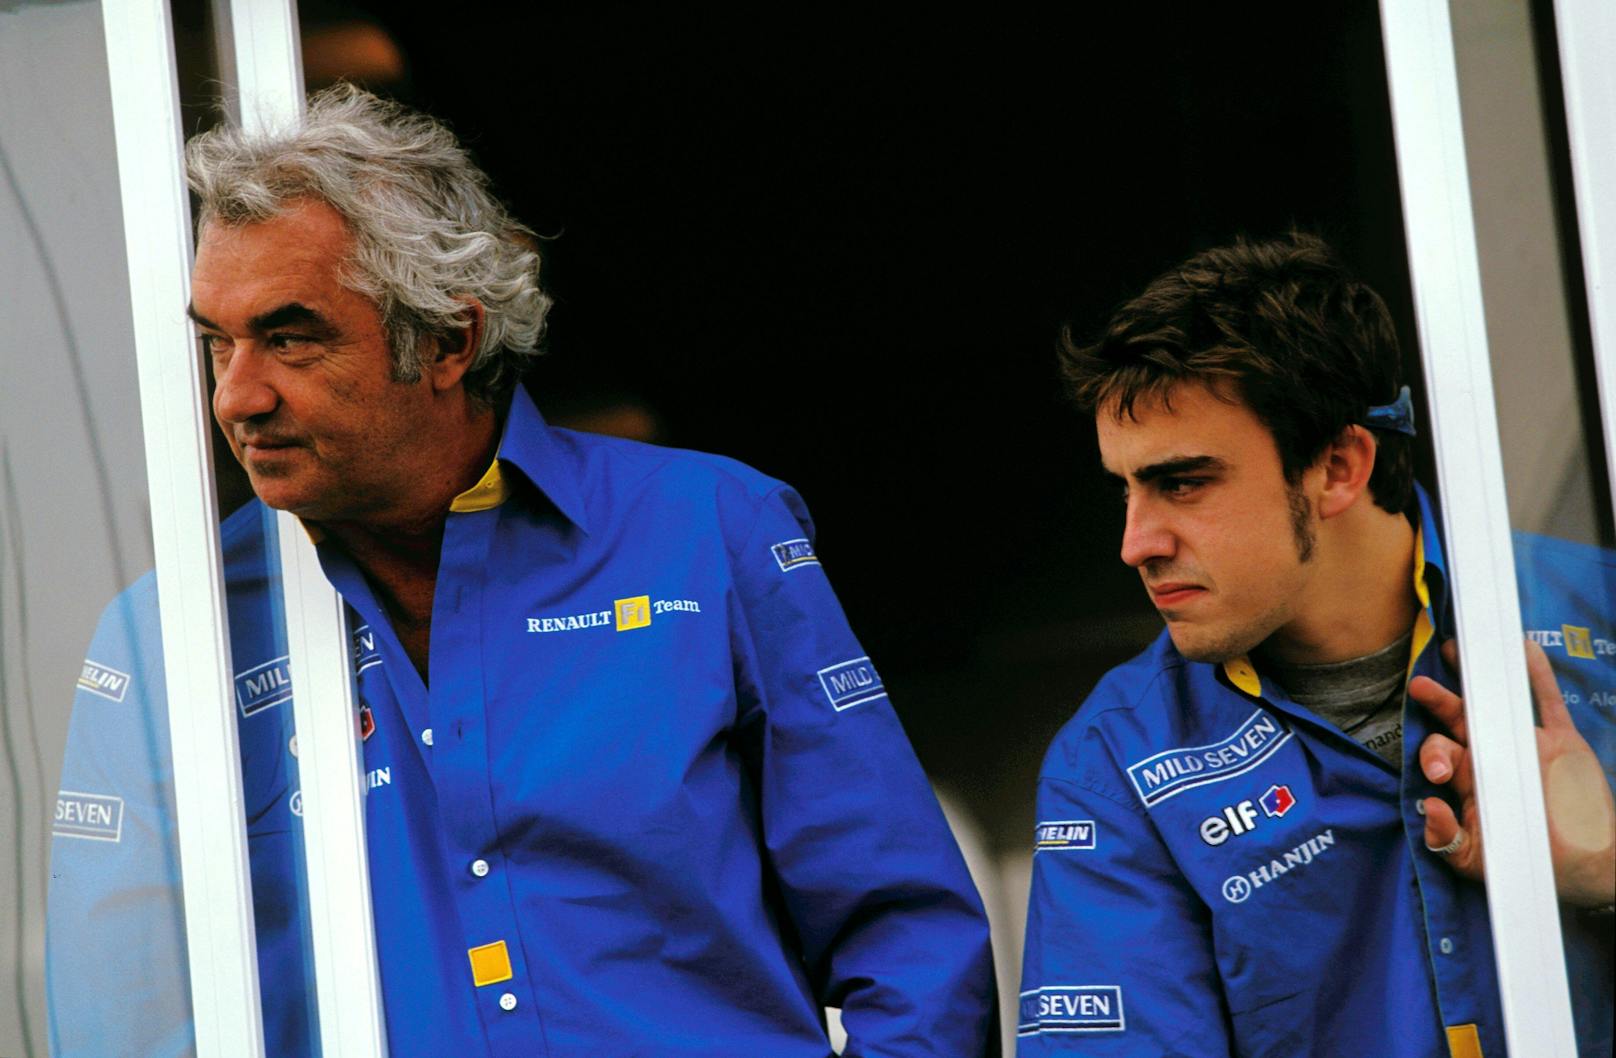 Flavio Briatore führte Schumacher und Fernando Alonso (rechts) bei Benetton und Renault jeweils zu zwei Weltmeistertitel. 2009 beendete die Crashgate-Affäre seine Laufbahn in der Formel 1. Ihm wurde vorgeworfen, den Unfall seines Fahrers Nelson Piquet absichtlich herbeigeführt, den Rennverlauf so beeinflusst zu haben. Piquet verriet, dass der Plan von Briatore und seinem Technikchef Pat Symonds ausgegangen sei. Die FIA sperrte beide.&nbsp;Briatore klagte in Frankreich gegen die FIA - und bekam im Januar 2010 Recht. Die Sperre wurde aufgehoben.